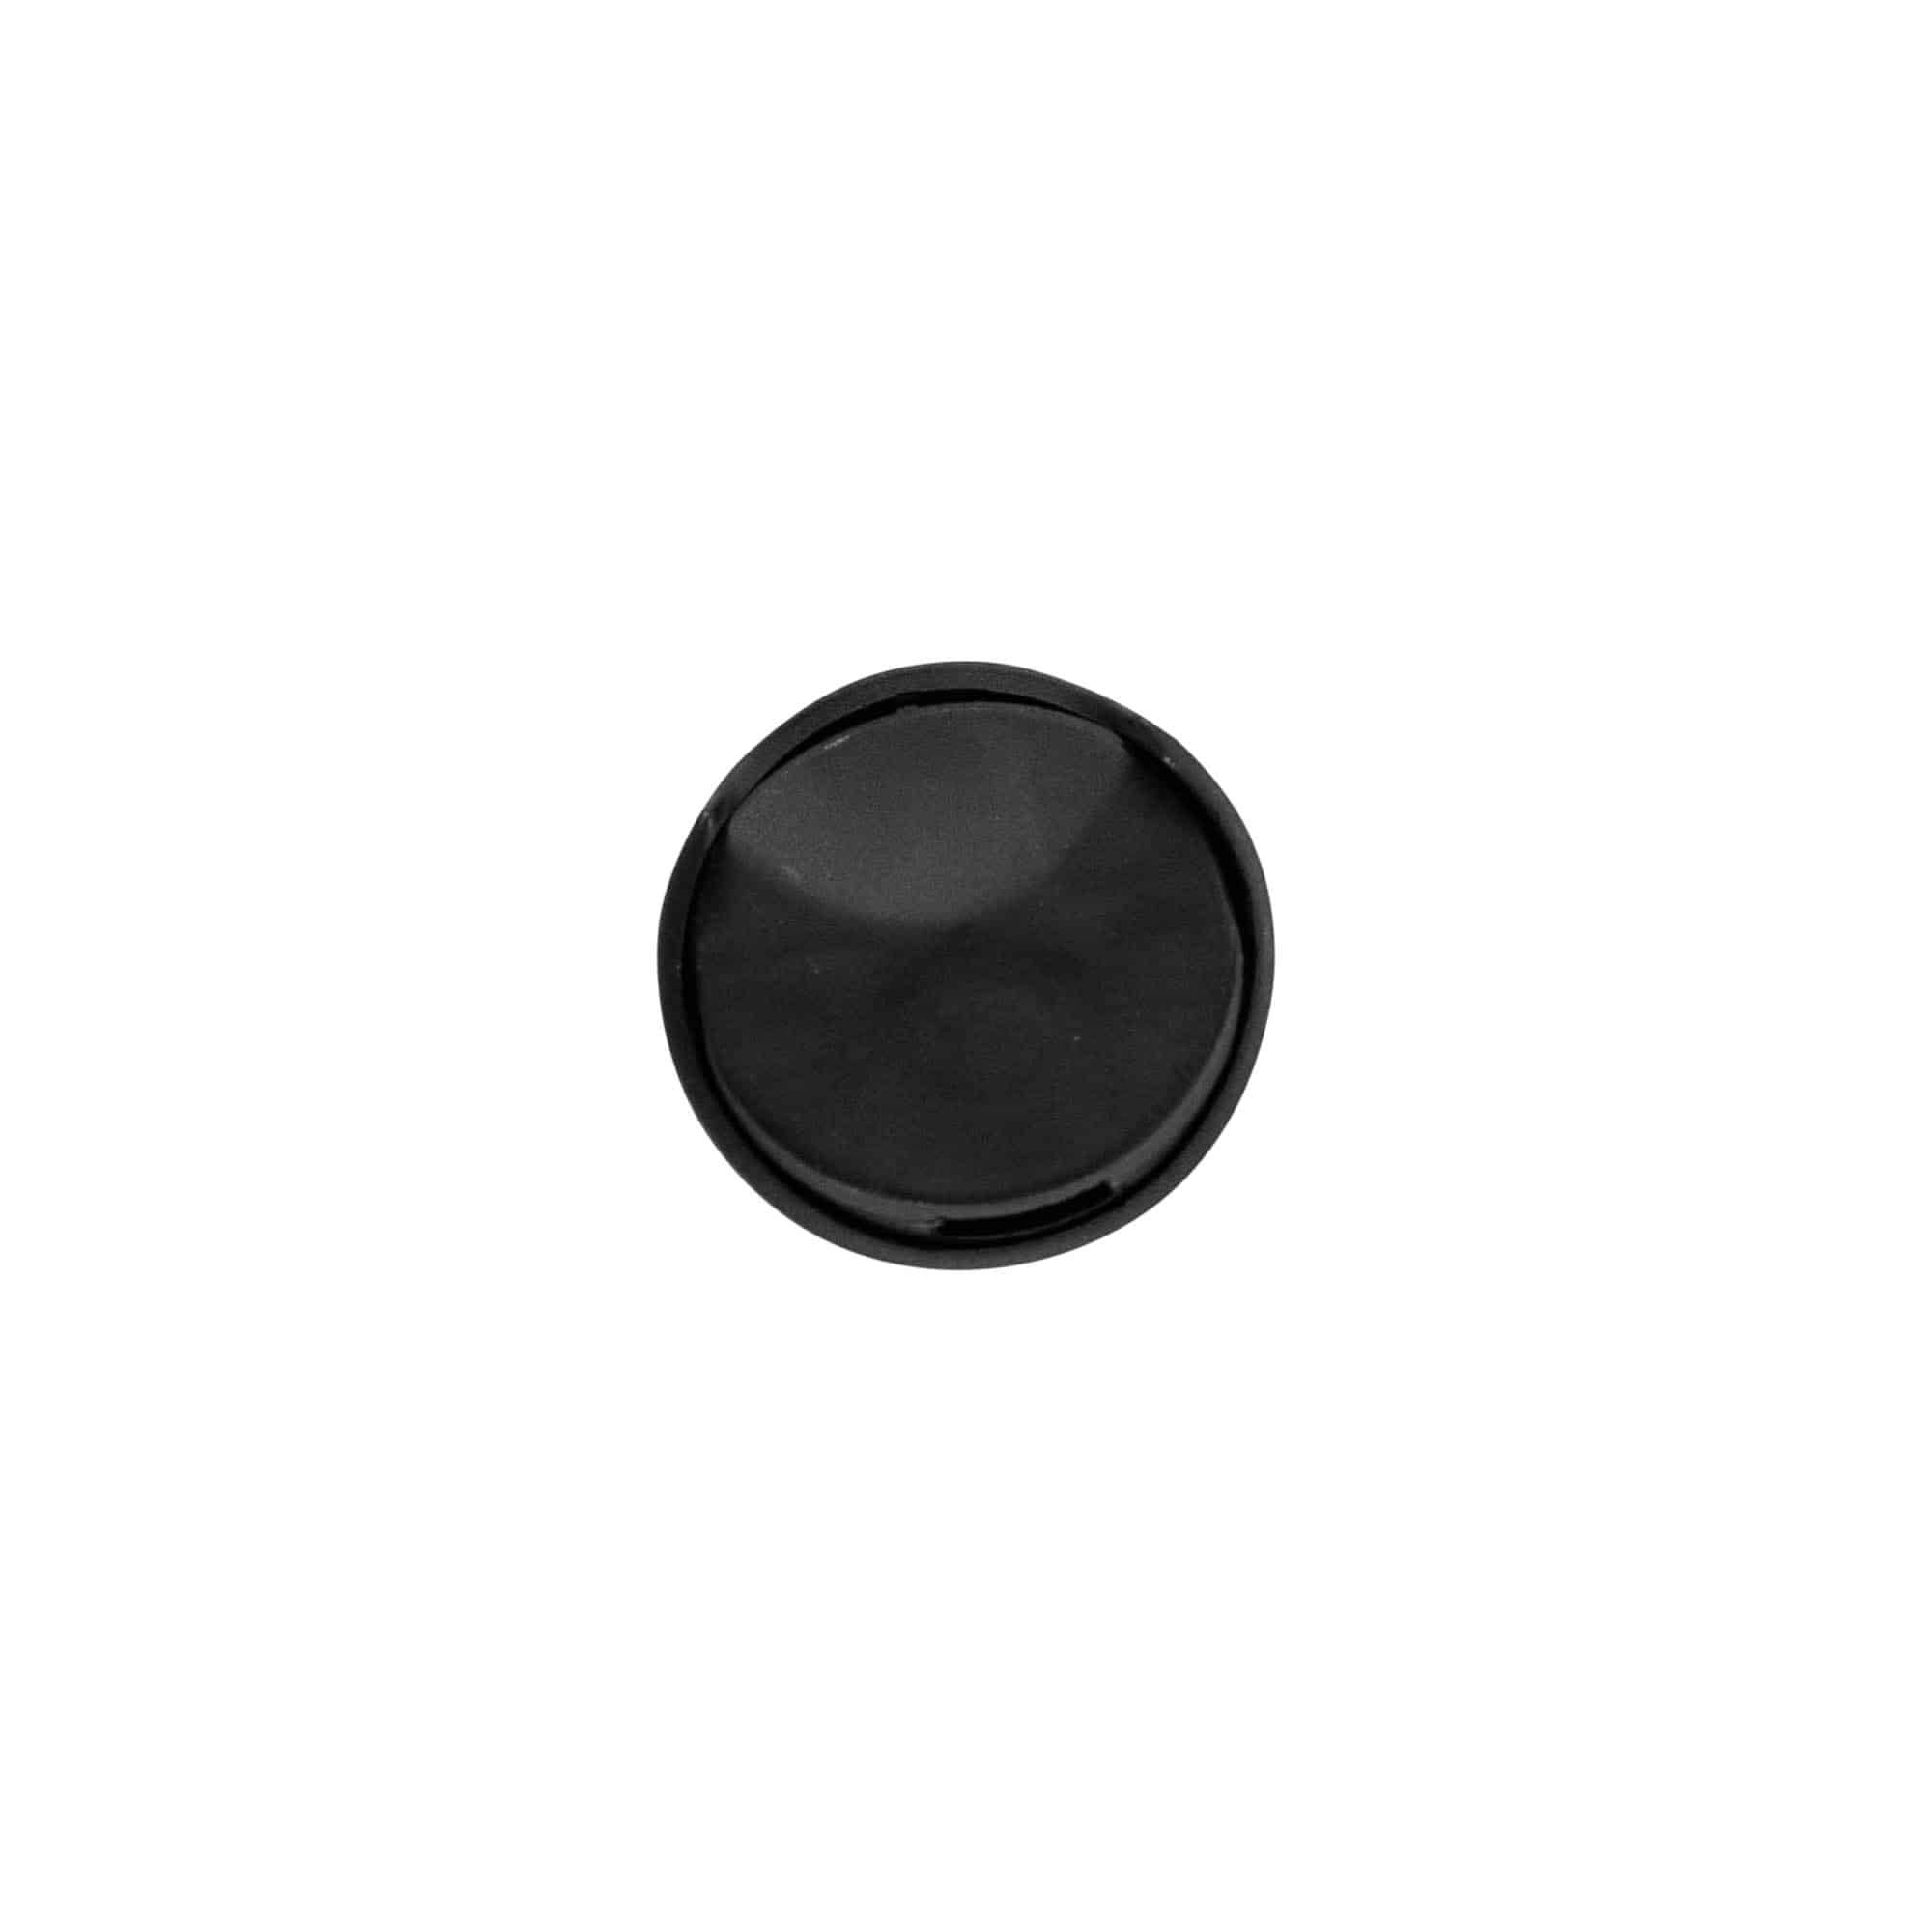 Schraubverschluss Disc Top, PP-Kunststoff, schwarz, für Mündung: GPI 24/410